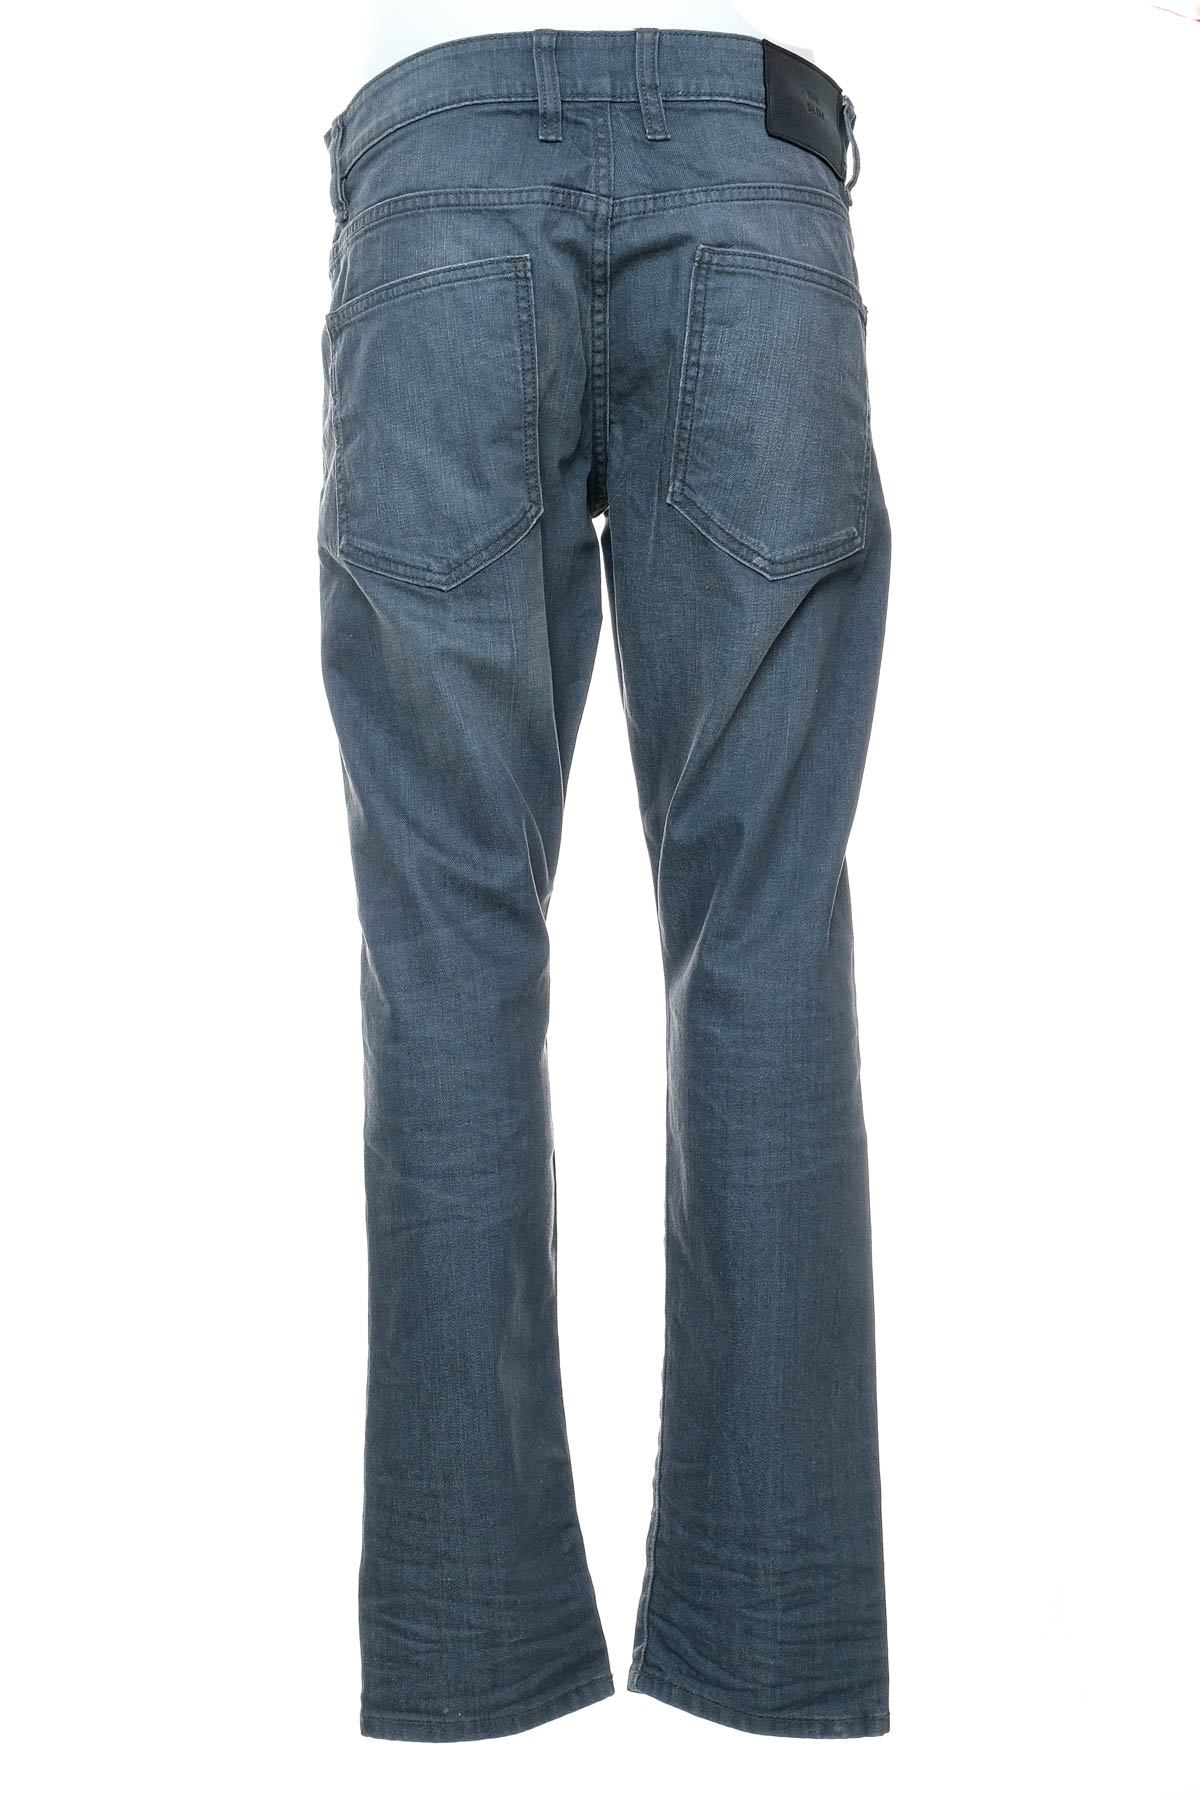 Men's jeans - C&A - 1